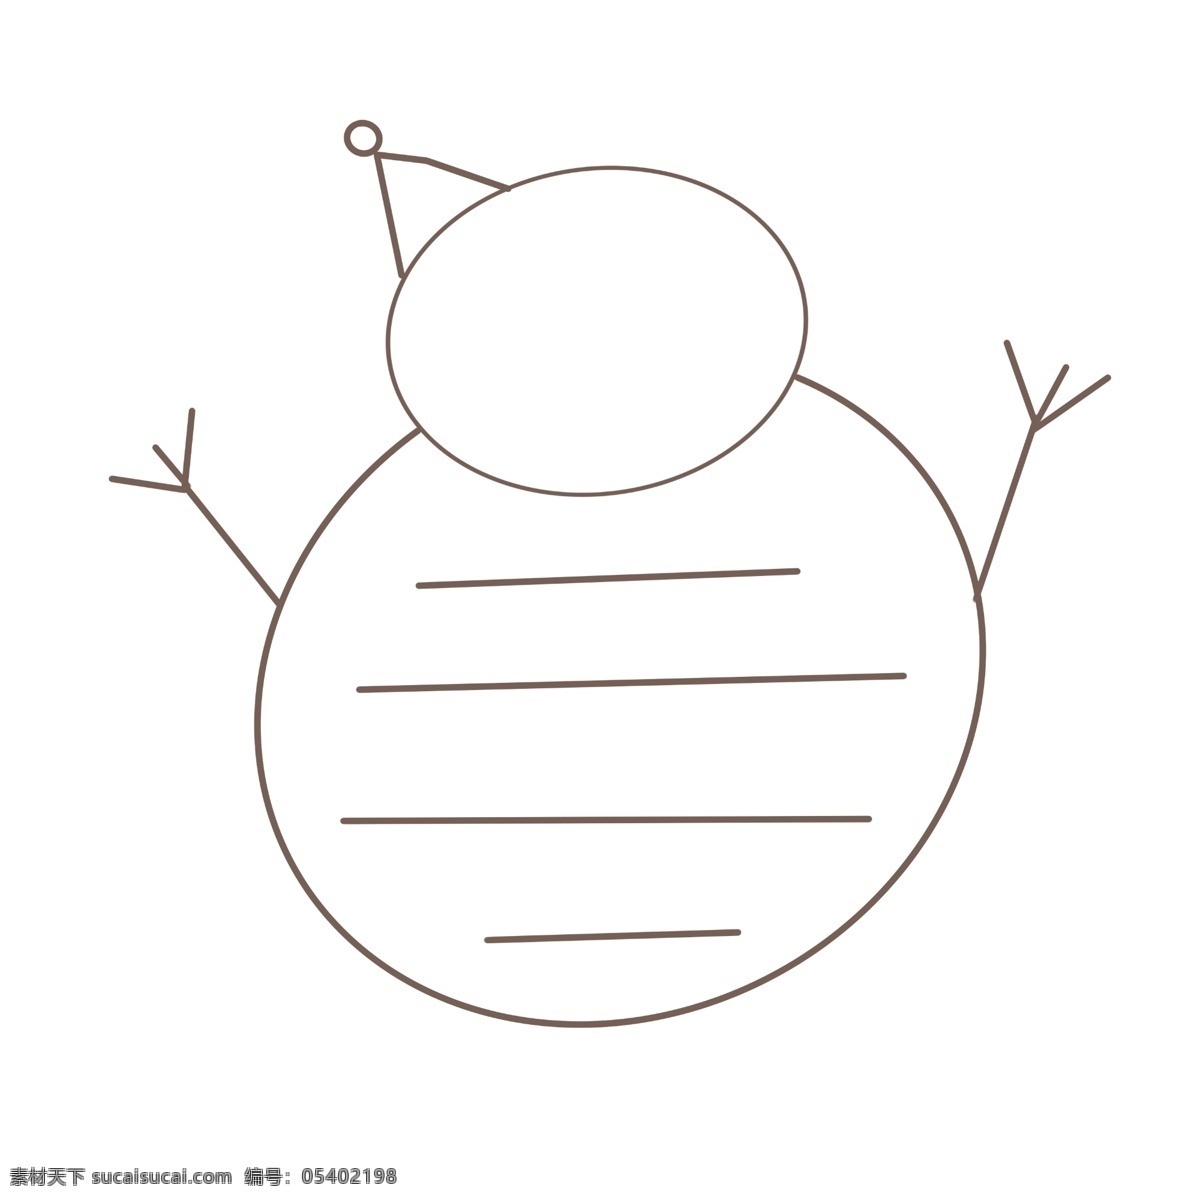 简单 对话框 手绘 雪人 可爱 对话款 黑色 简约 框 卡通对话框 雪人造型 圆形 卡通手绘